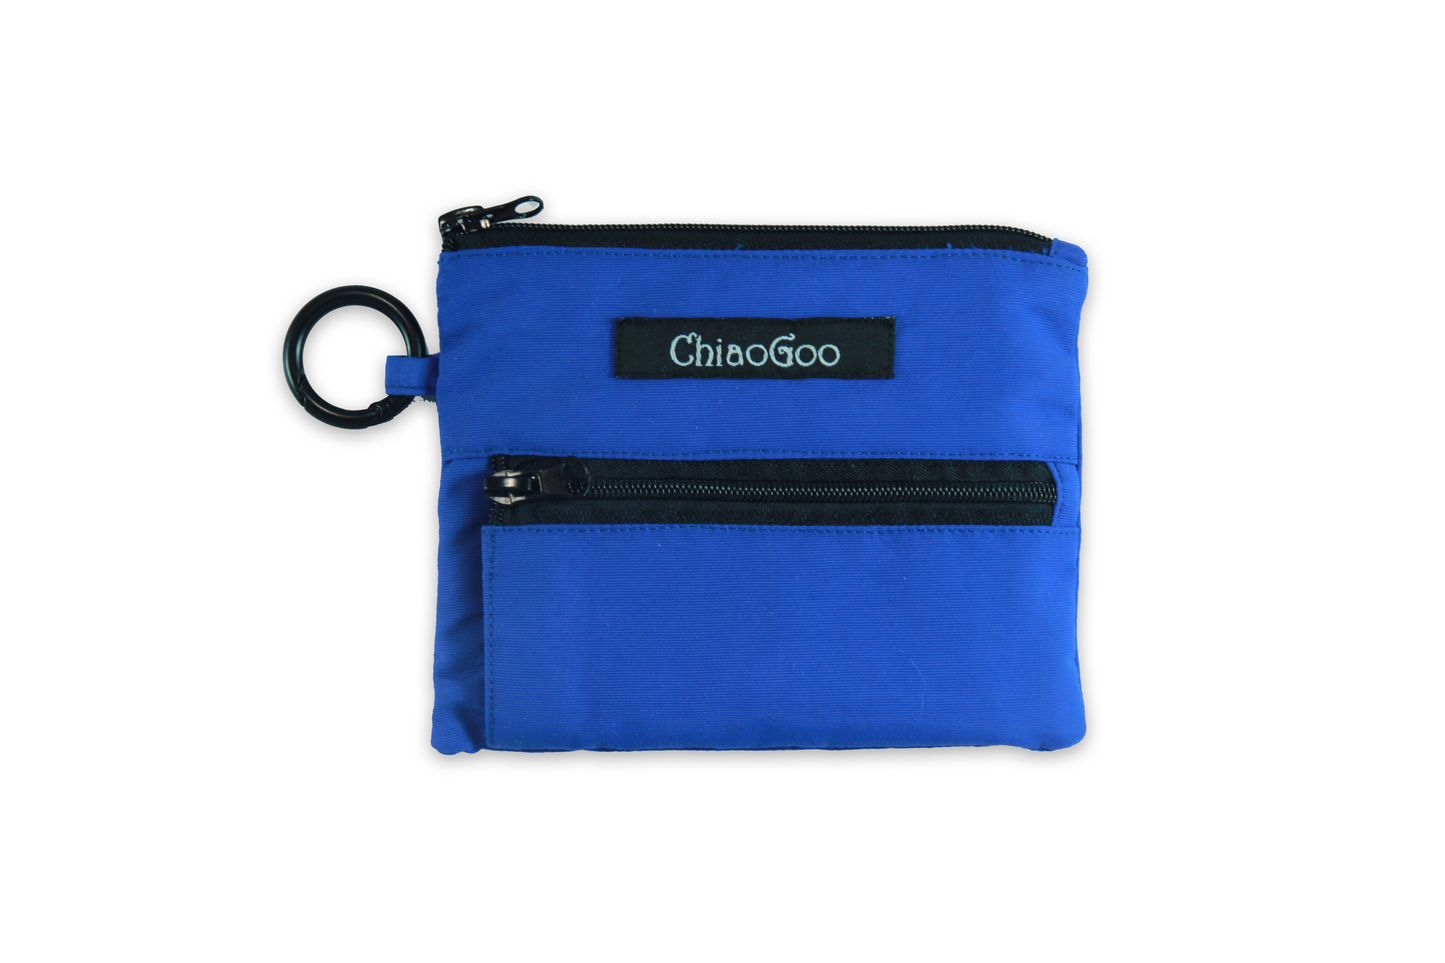 Chiaogoo TWIST Blue Shorties Interchangeable Set - US 4 - 8 (35mm & 5mm) Tips